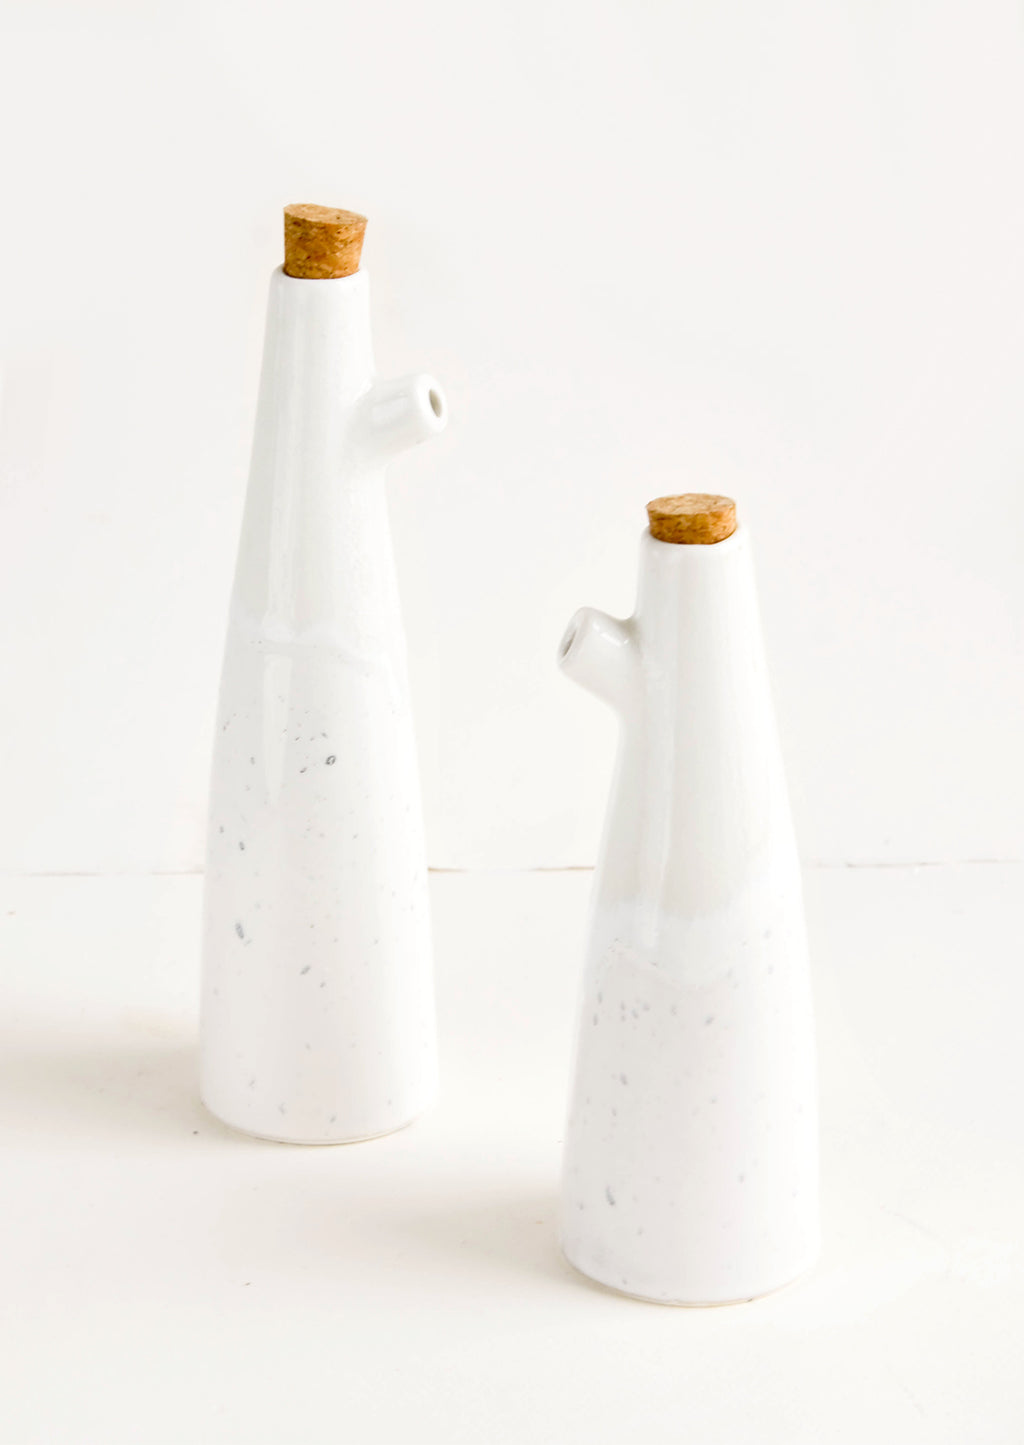 Small / White / Grey Splatter: Ceramic cruets for oil & vinegar, one taller than the other. Glossy white glaze, cork stopper as lid.